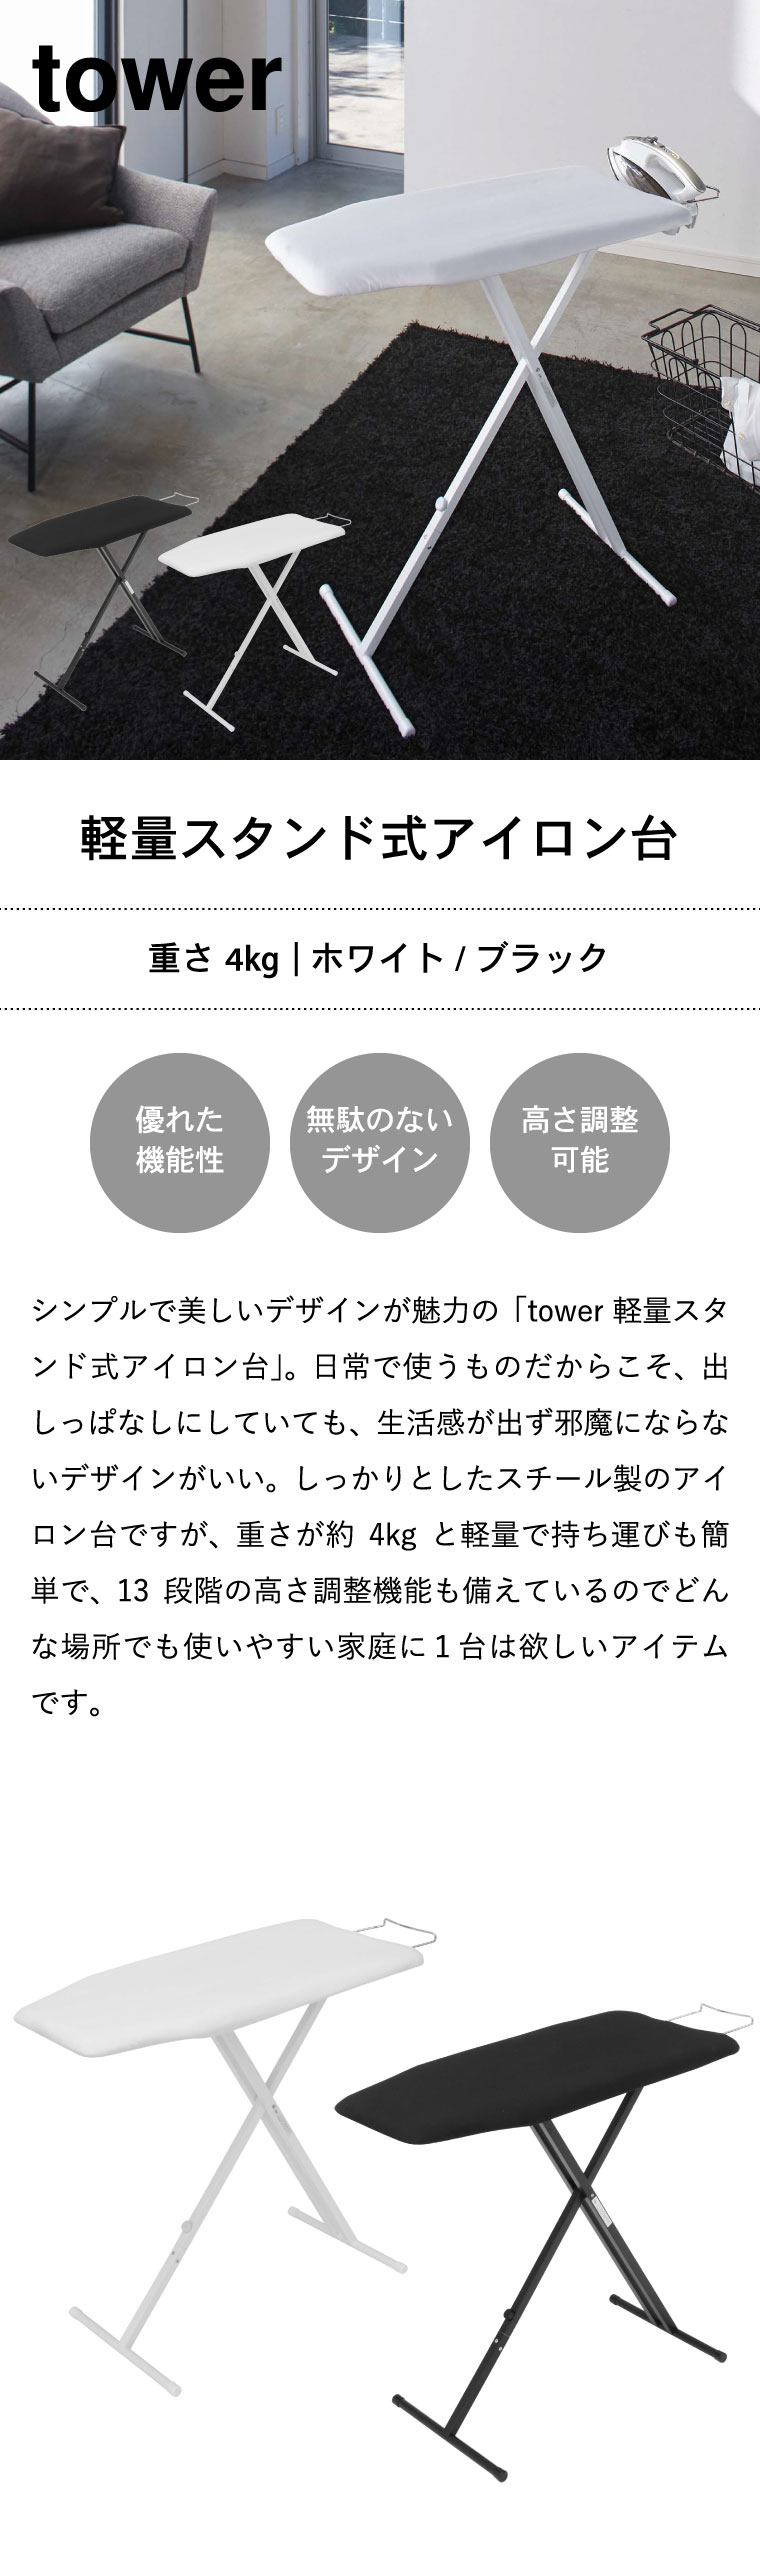 軽量スタンド式アイロン台 タワー 山崎実業 tower ホワイト ブラック